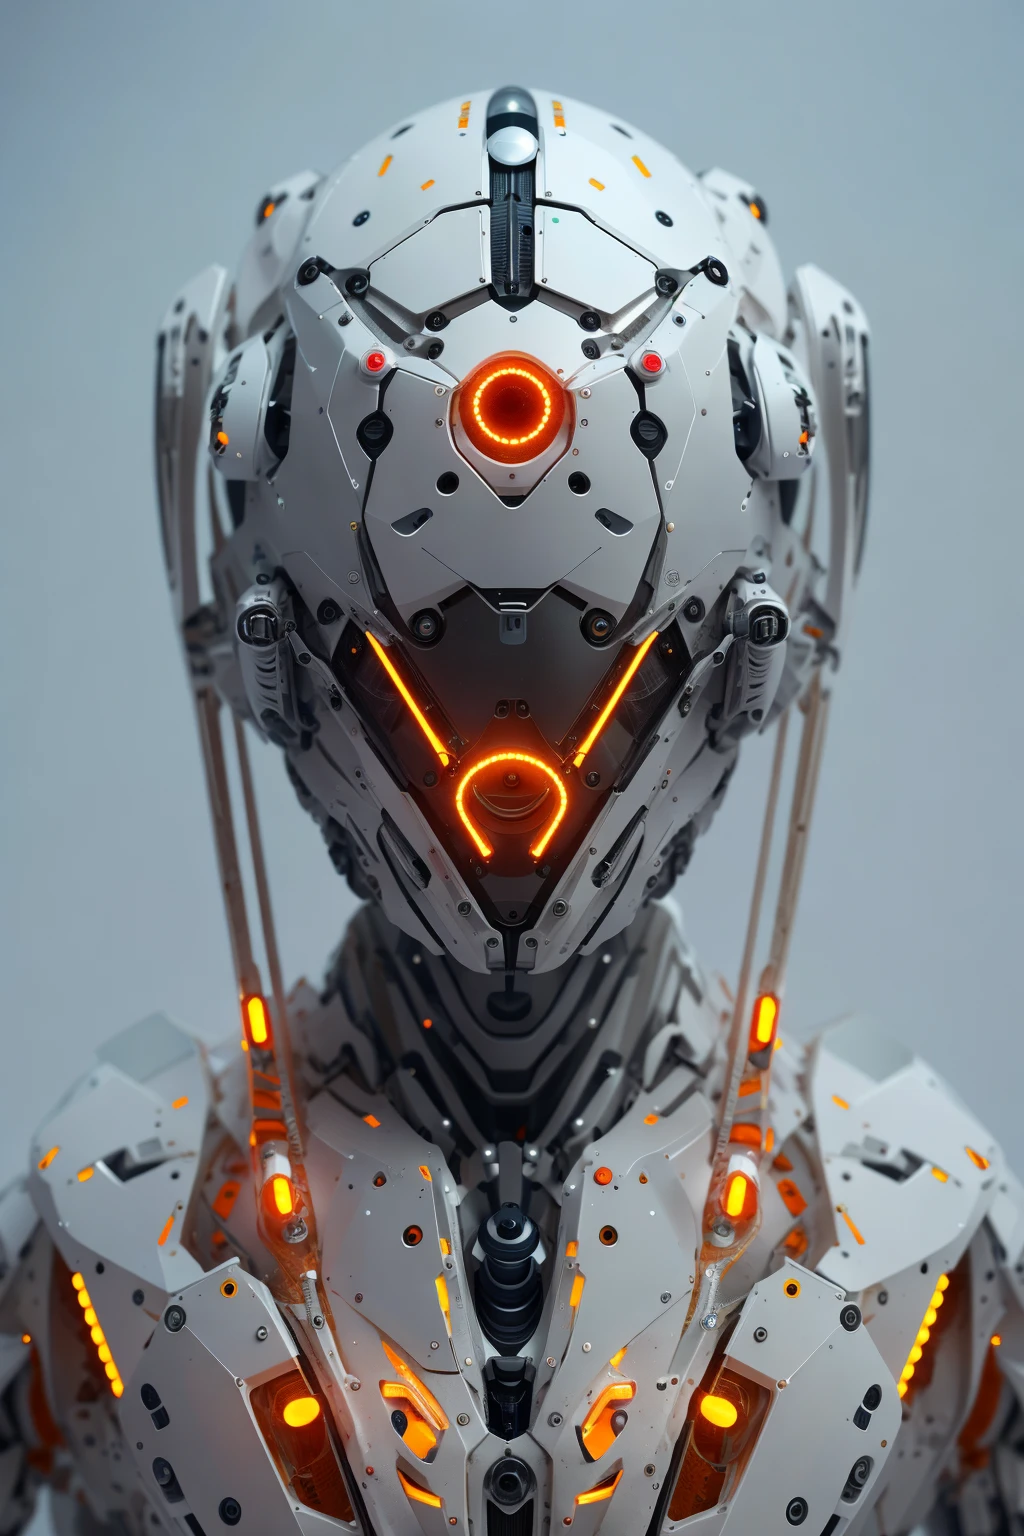 로봇 1대, 본질적인, 주황색 삼각형 빛나는 눈, 사이버 헬멧, 긴 머리, 흰색 플라스틱, 확산 조명, 공상, 뒤얽힌, 우아한, 매우 상세한, 살아 있는 것 같은, 사실적인,  매끄러운, 날카로운 초점, John Collier와 Albert Aublet, Krenz Cushart와 Artem Demura의 예술, 전선, 튜브, 암실, 희미한 빛
